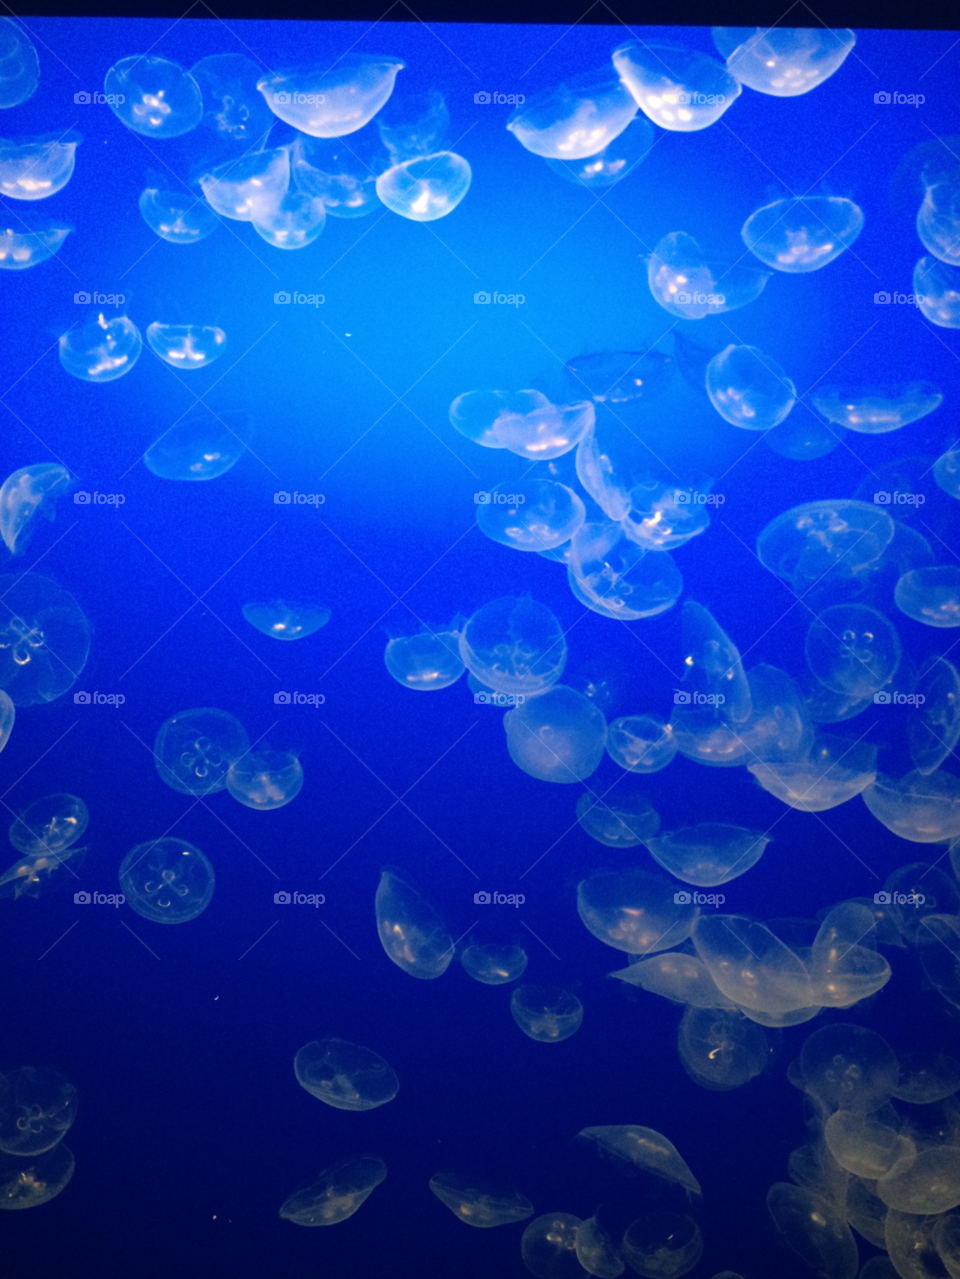 ocean jelly fish monterey bay by darkmatter